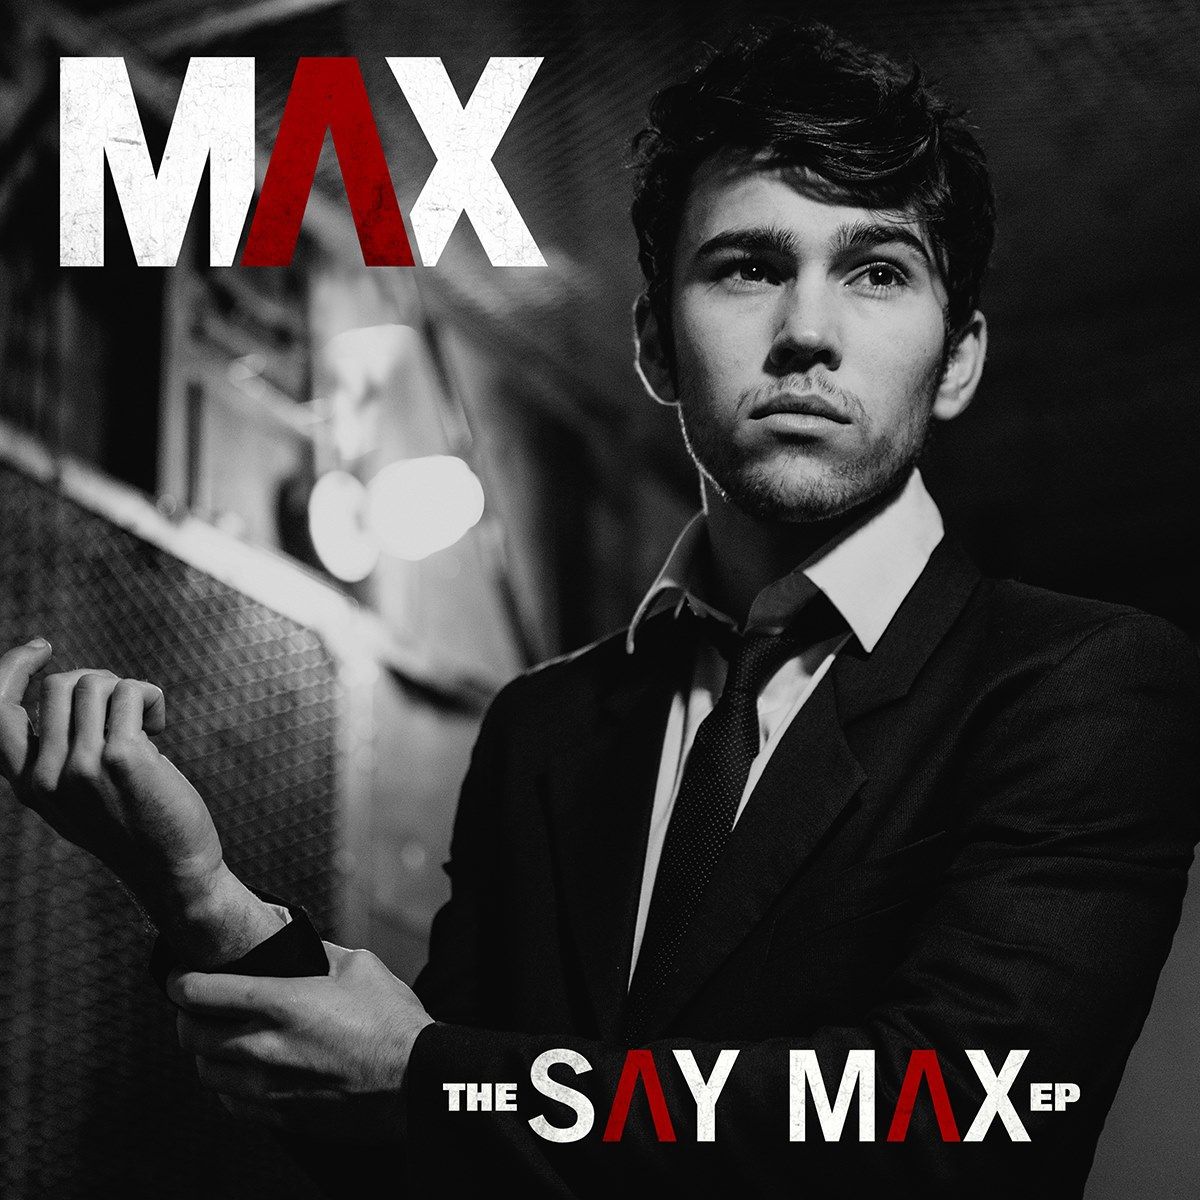 Imagem do álbum The Say Max do(a) artista MAX